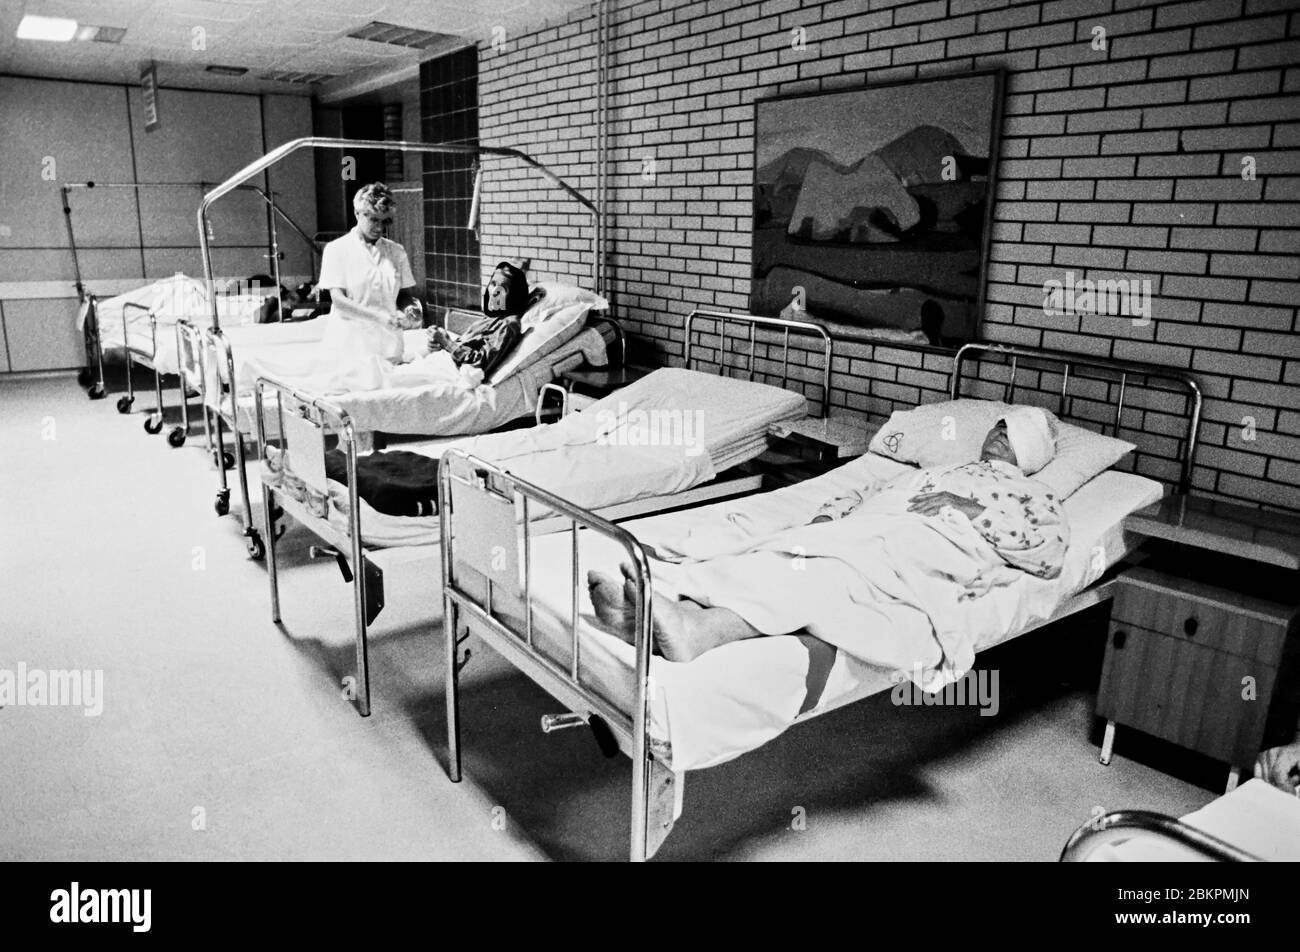 Bosnien 1993 bei Mostar während des Balkankriegs - Flüchtlinge in Krankenhausbetten warten darauf, was die Zukunft bringt Stockfoto